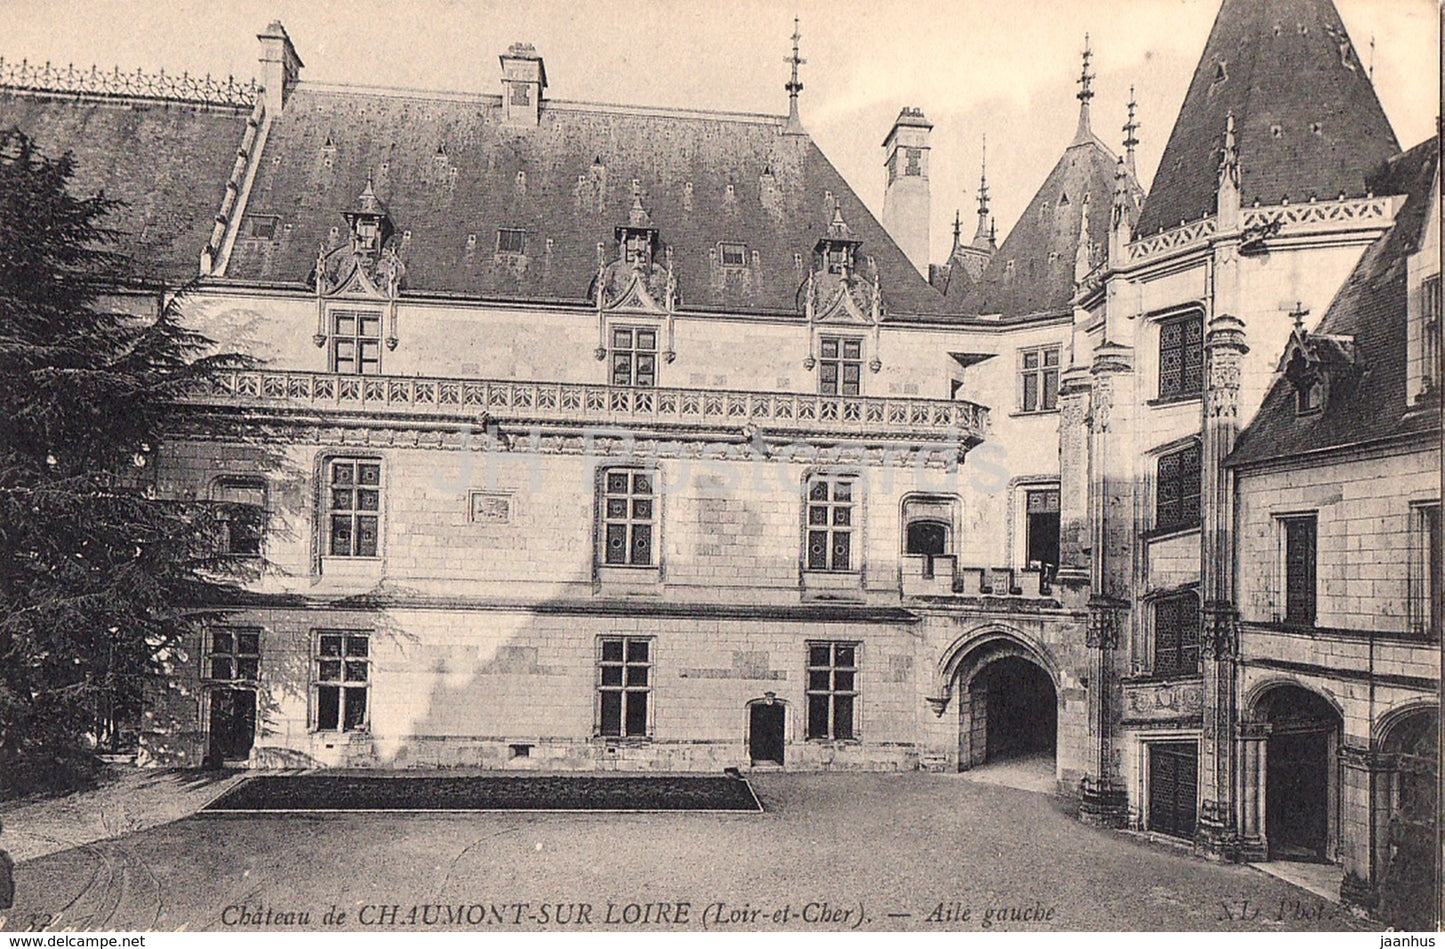 Chateau de Chaumont sur Loire - Aile Gauche - castle - old postcard - France - unused